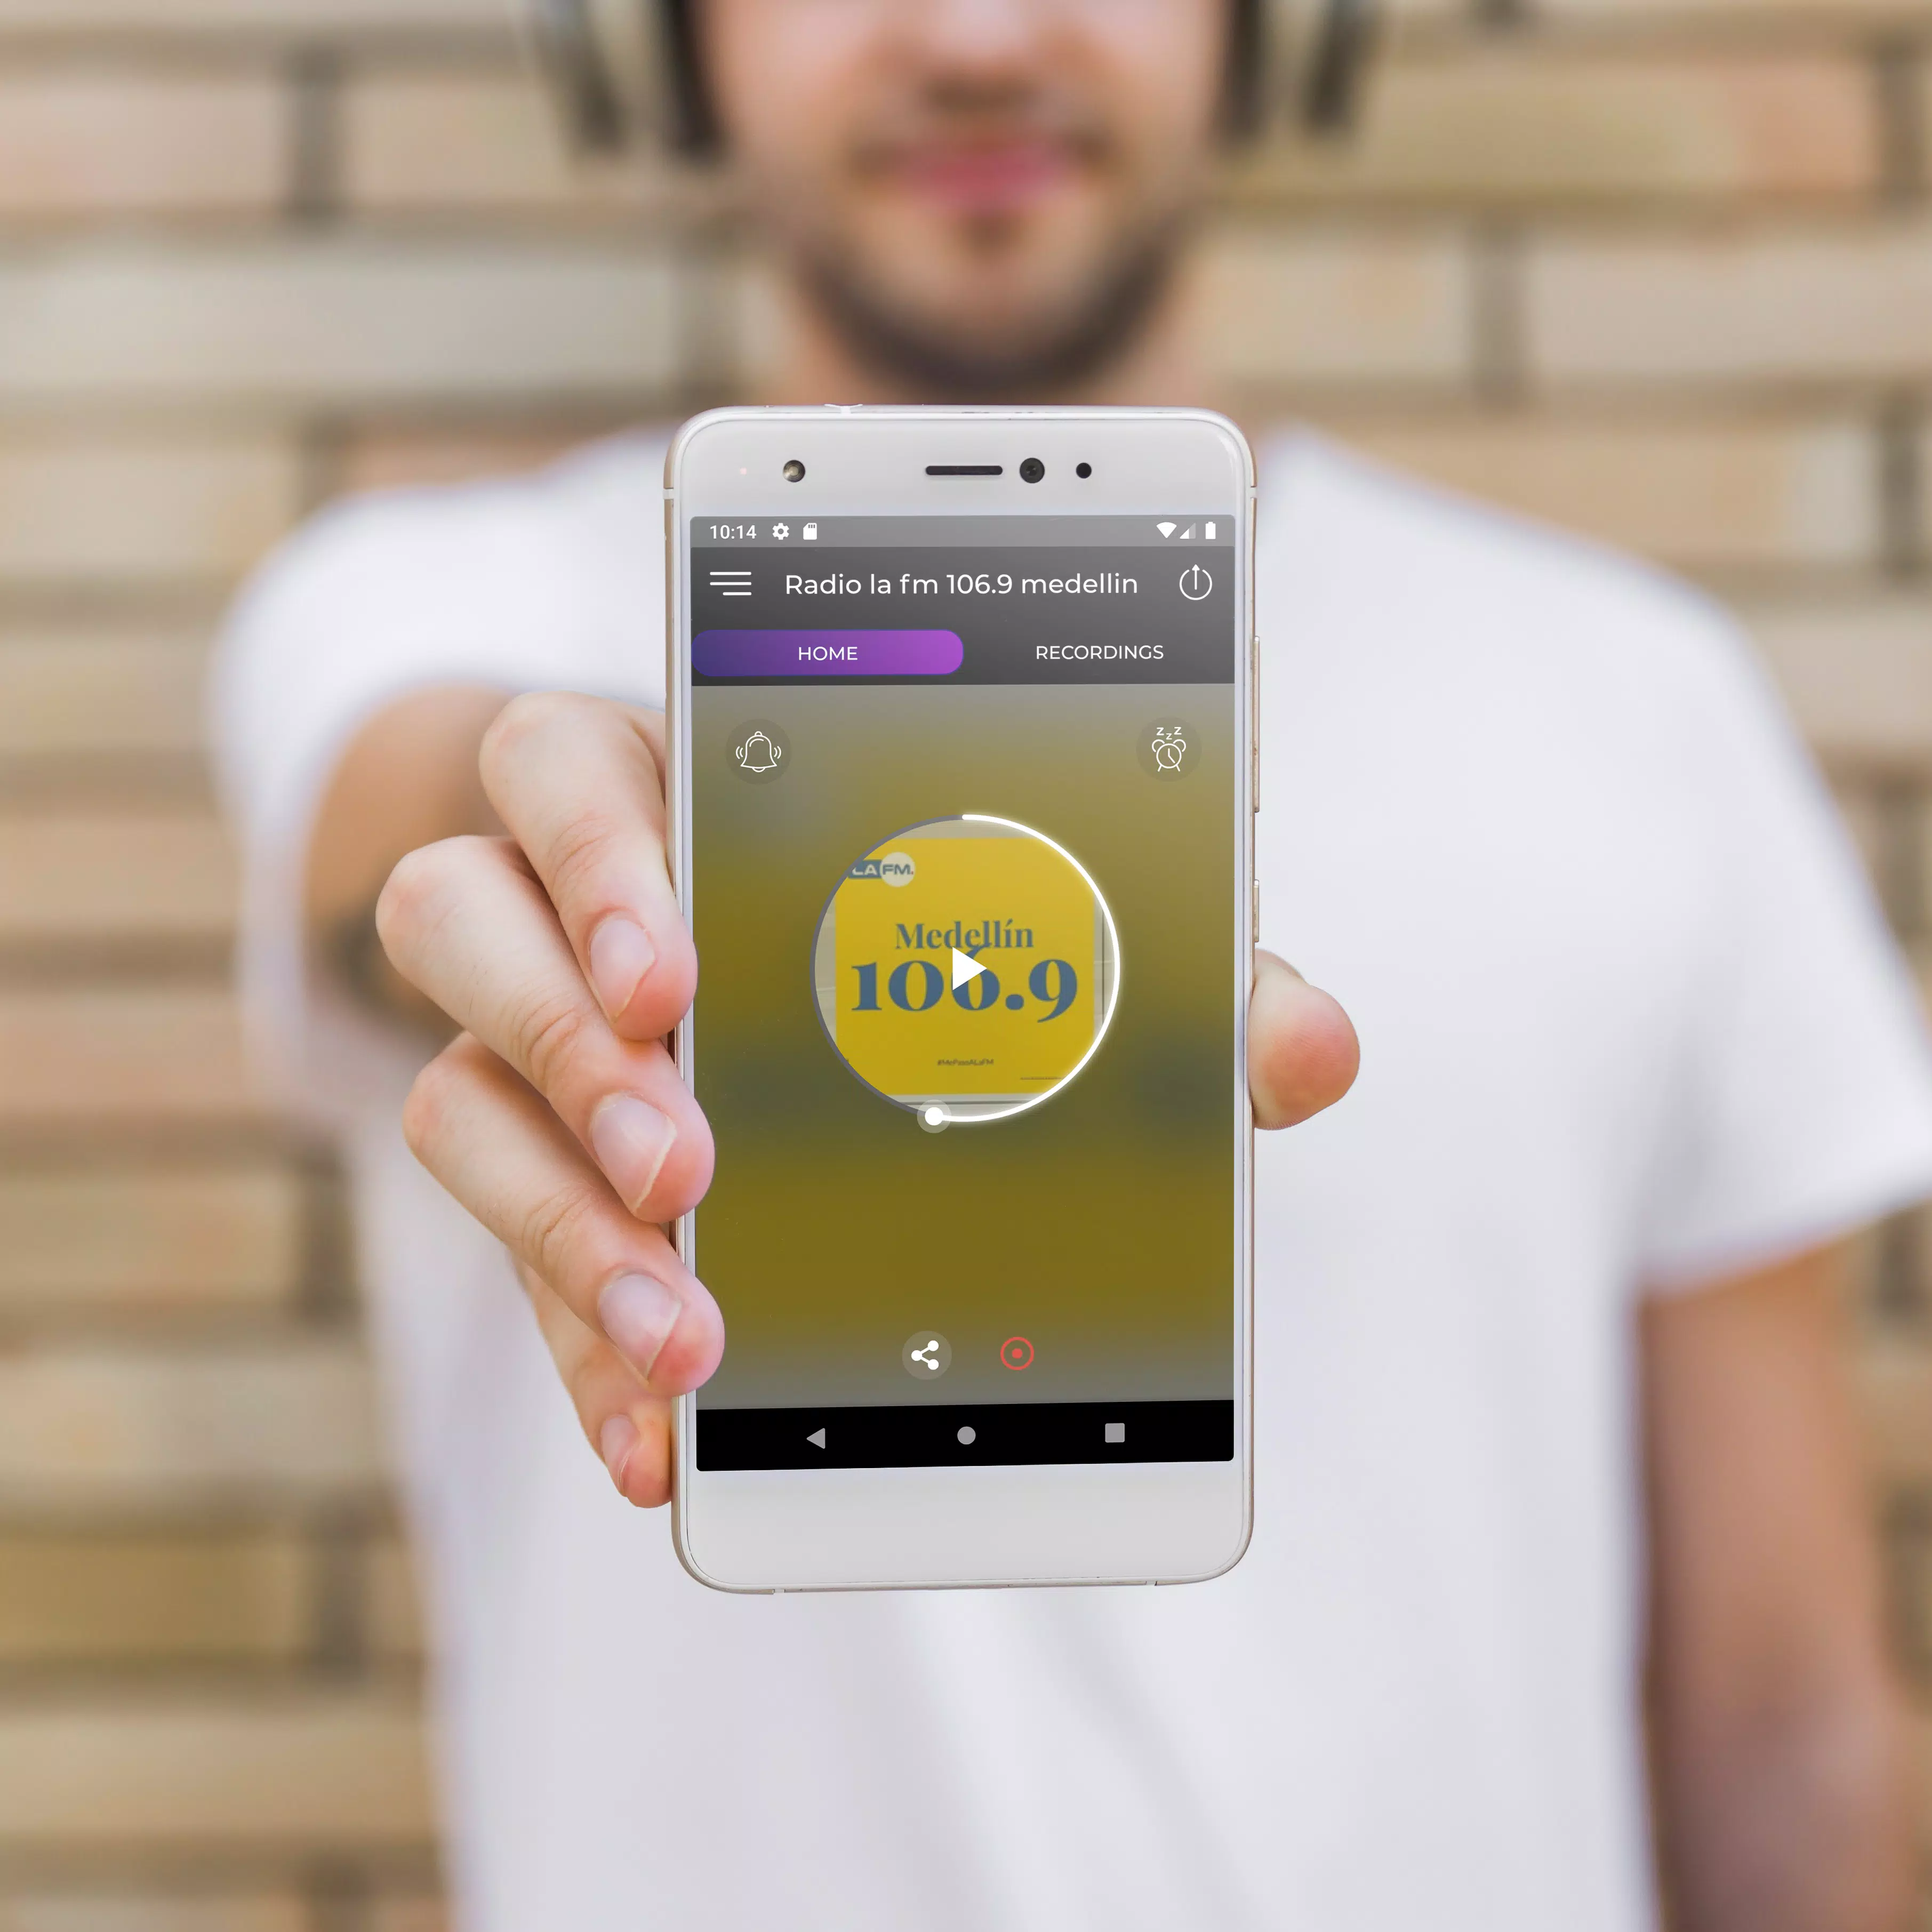 Radio la fm 106.9 medellin - Gratis En linea CO APK voor Android Download